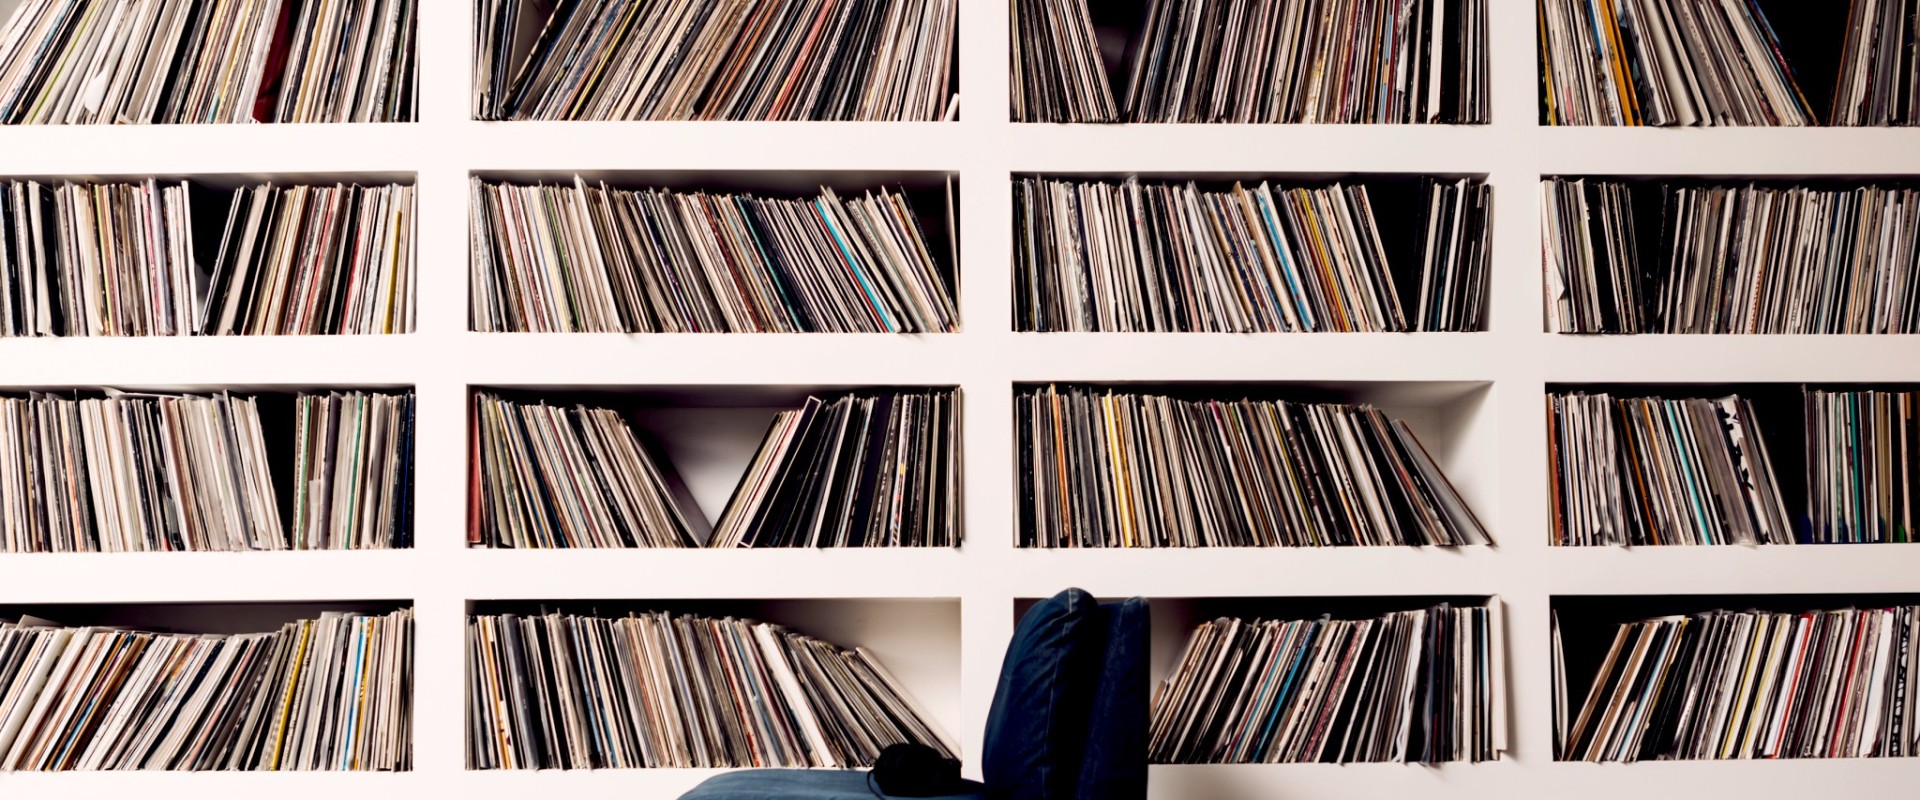 En mycket stor samling vinylskivor i en bokhylla.